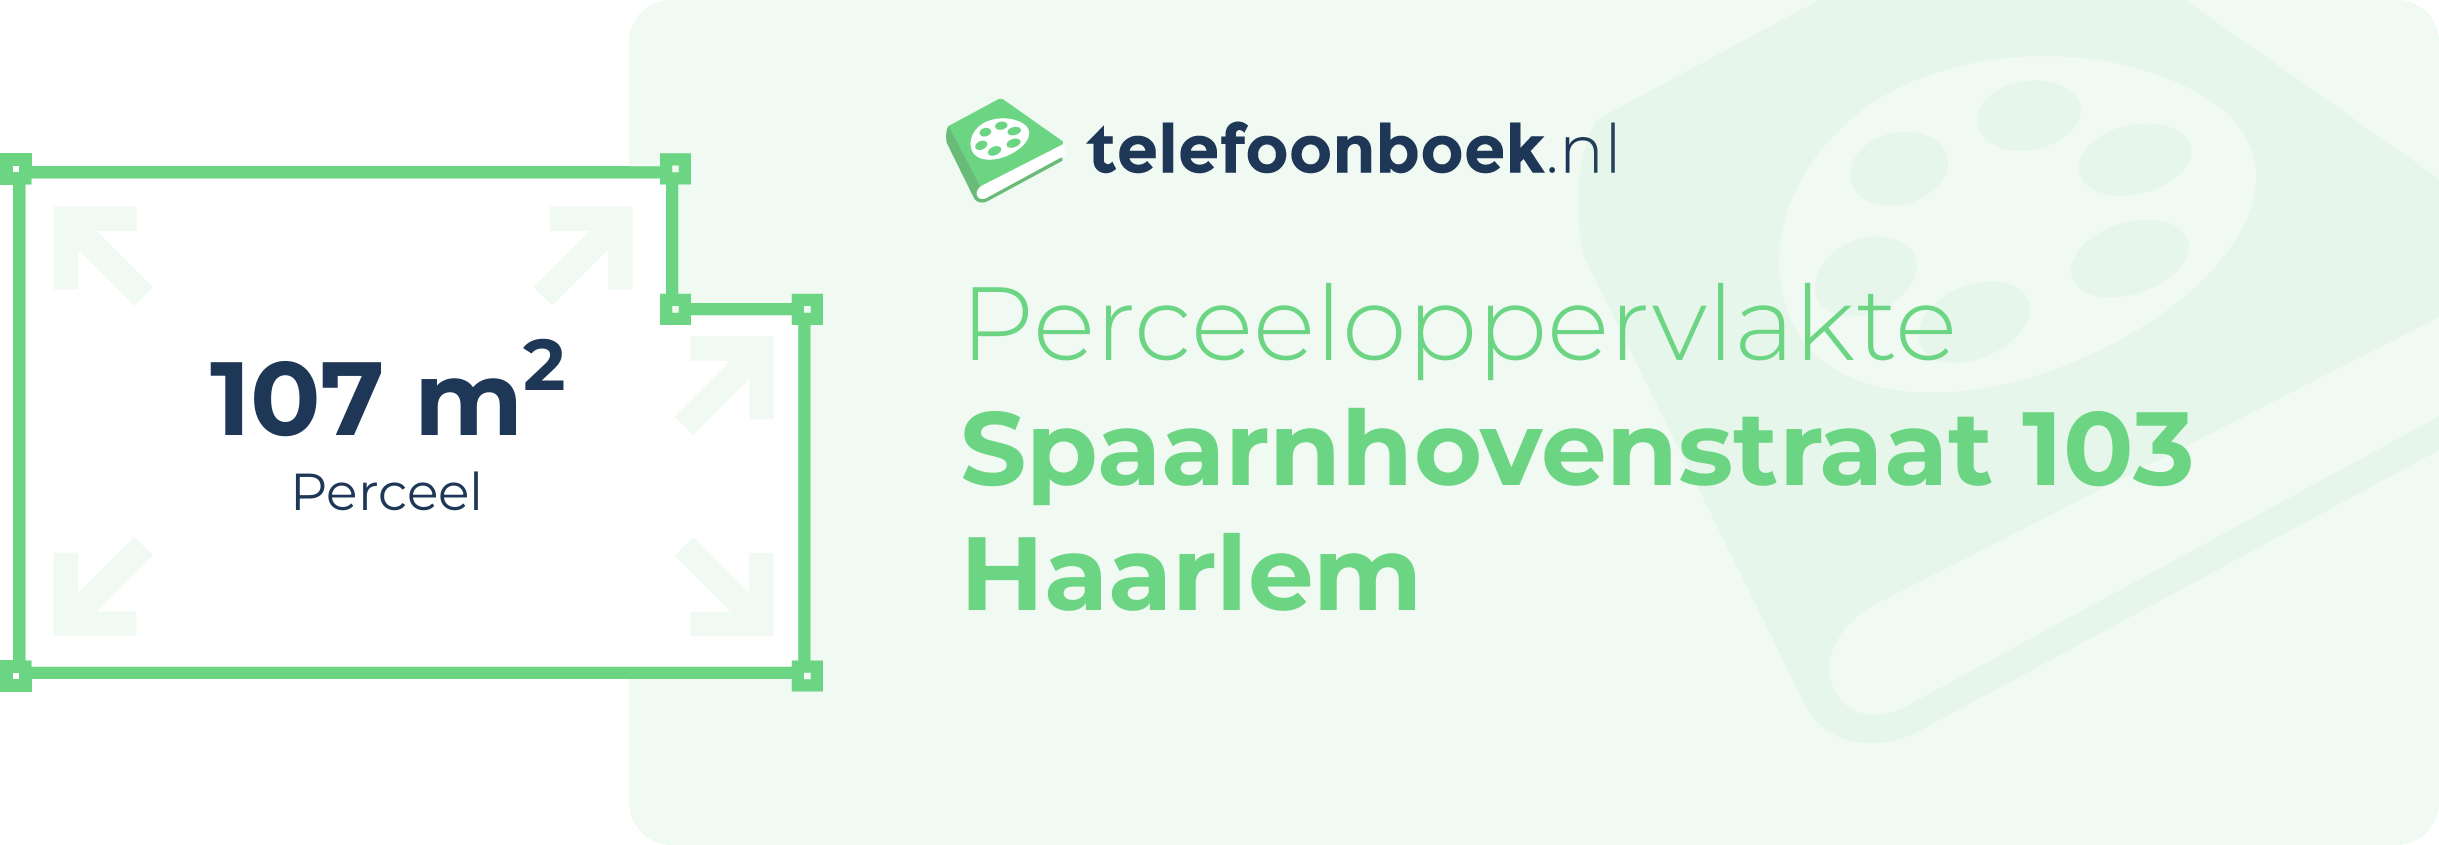 Perceeloppervlakte Spaarnhovenstraat 103 Haarlem